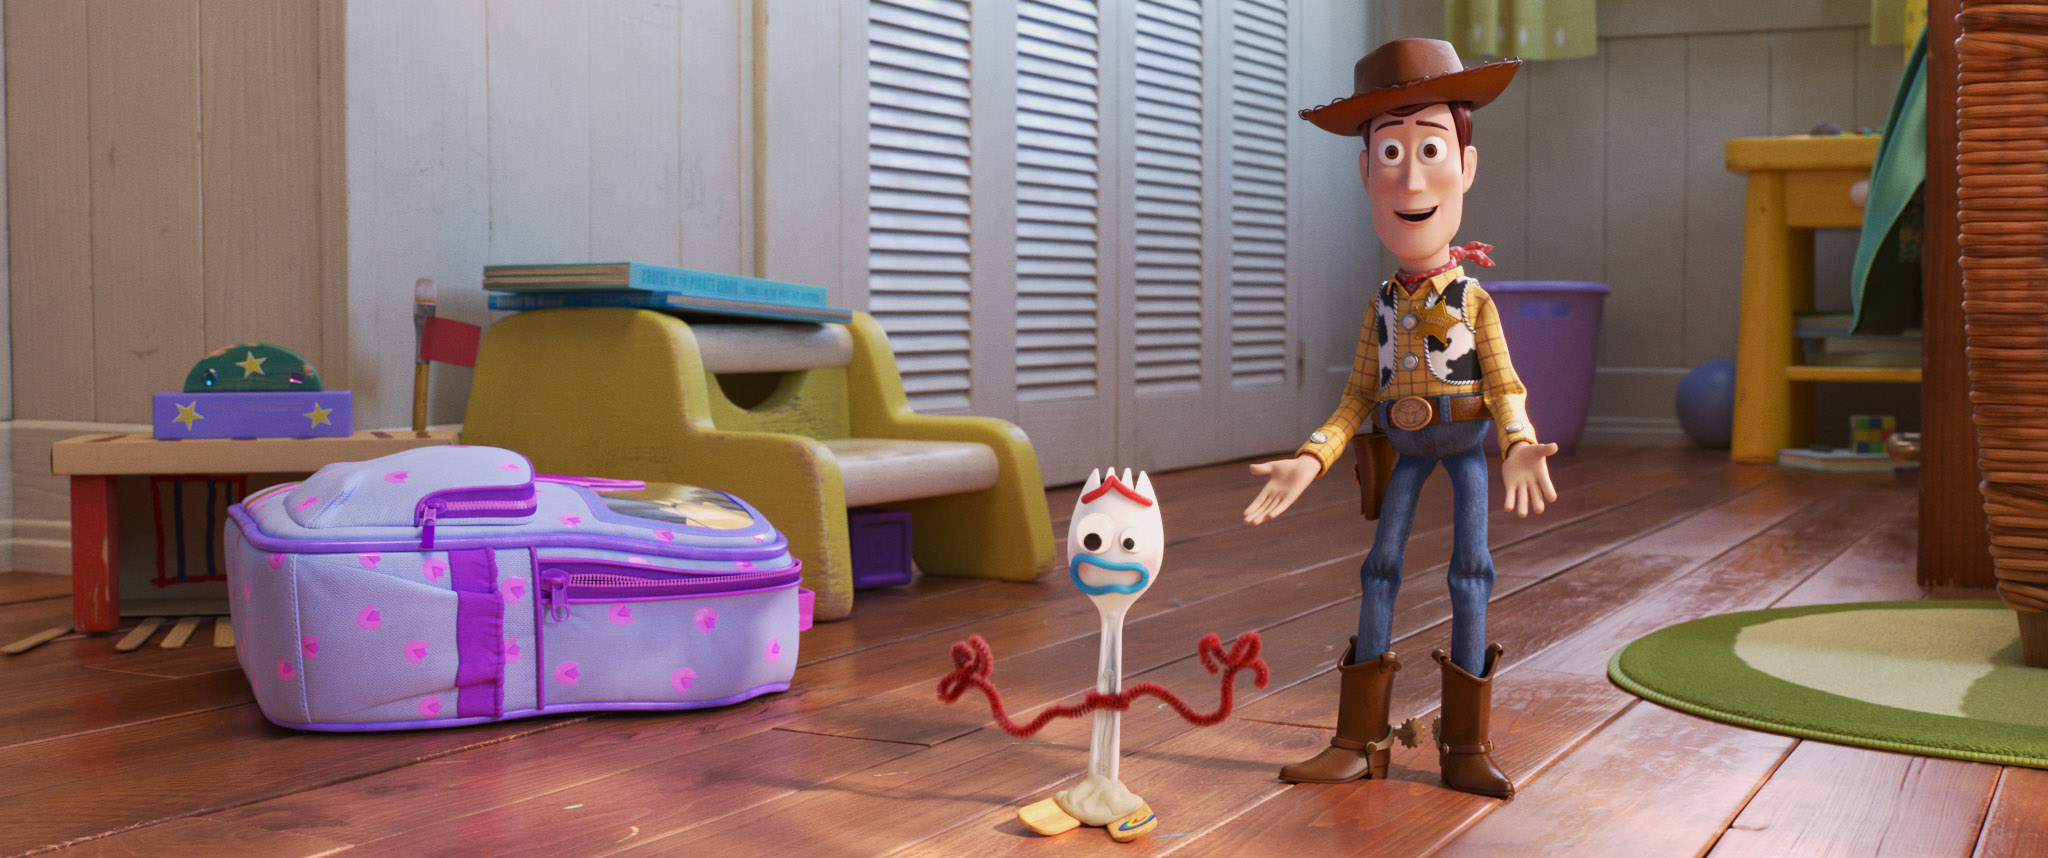 Toy Story ya no es solo para niños